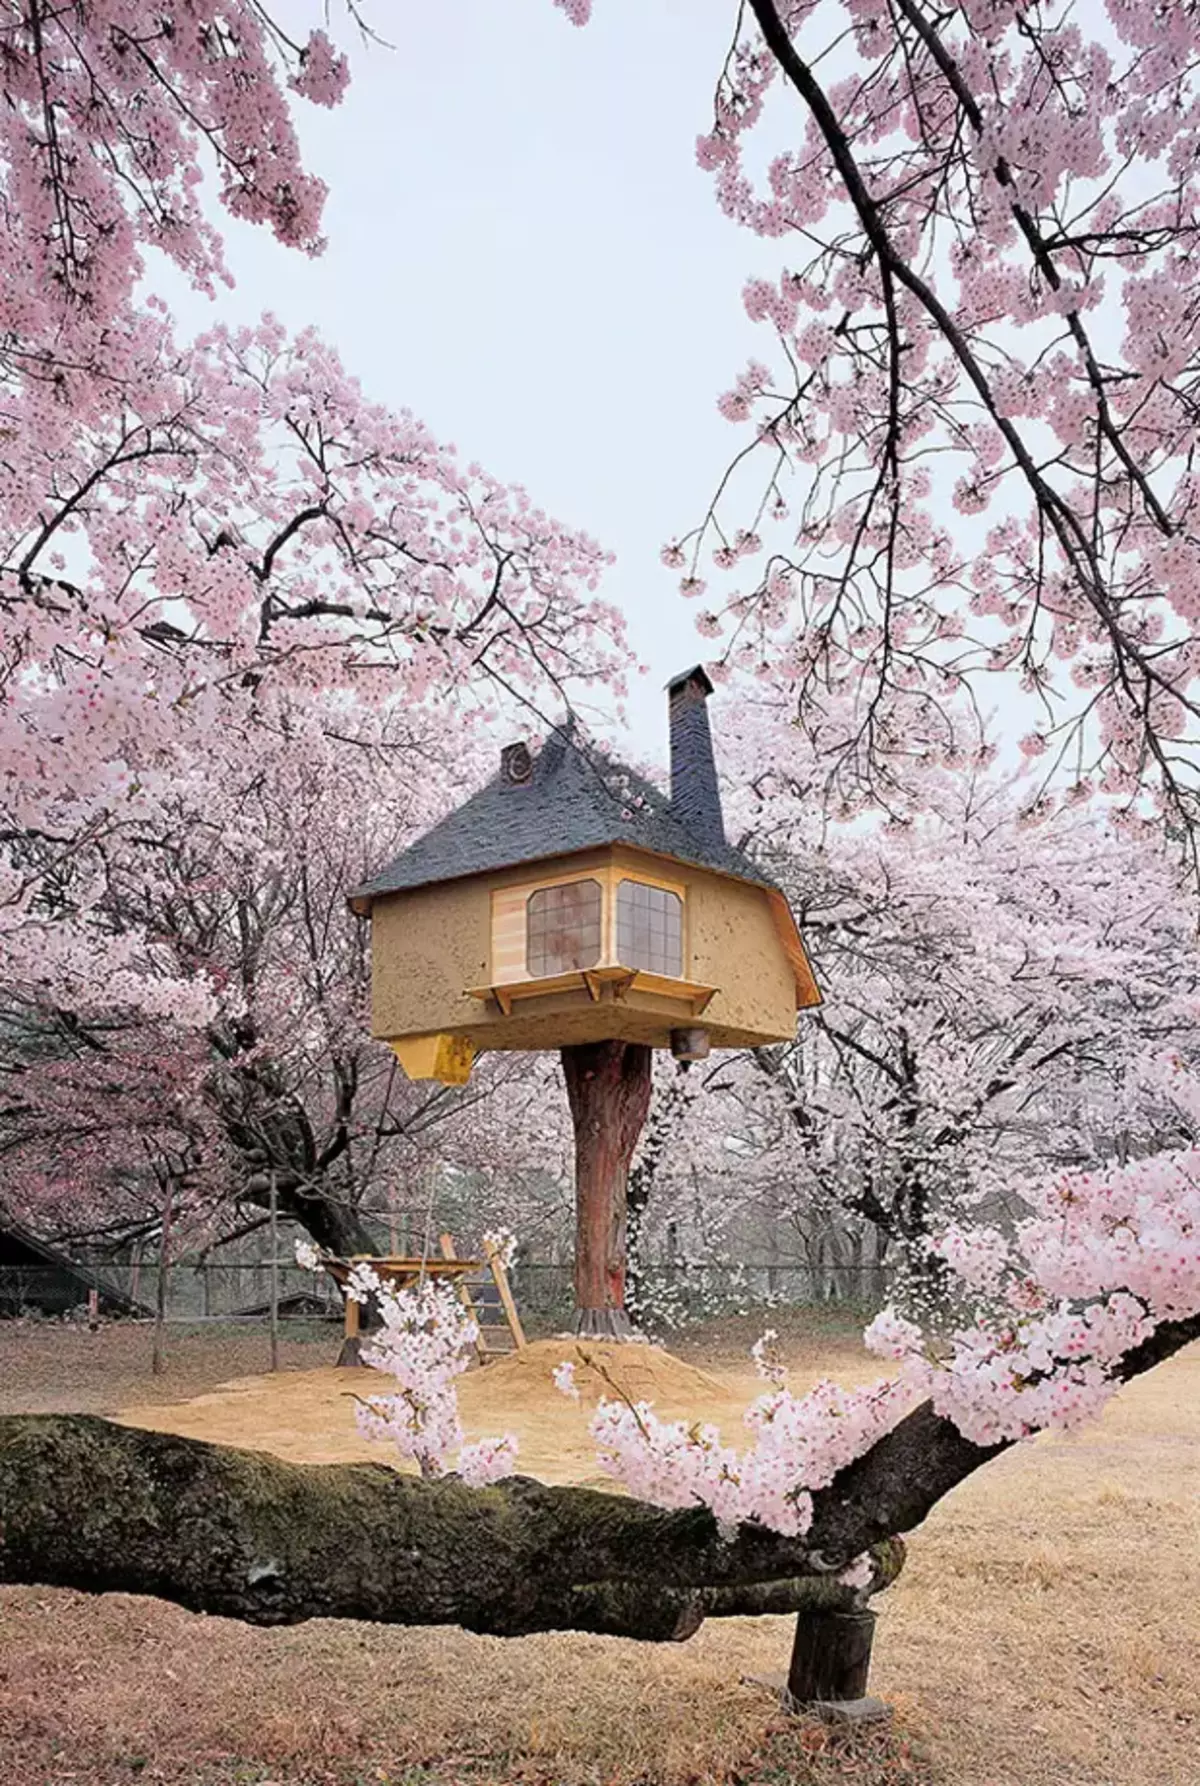 Casa de chá em uma árvore no Japão